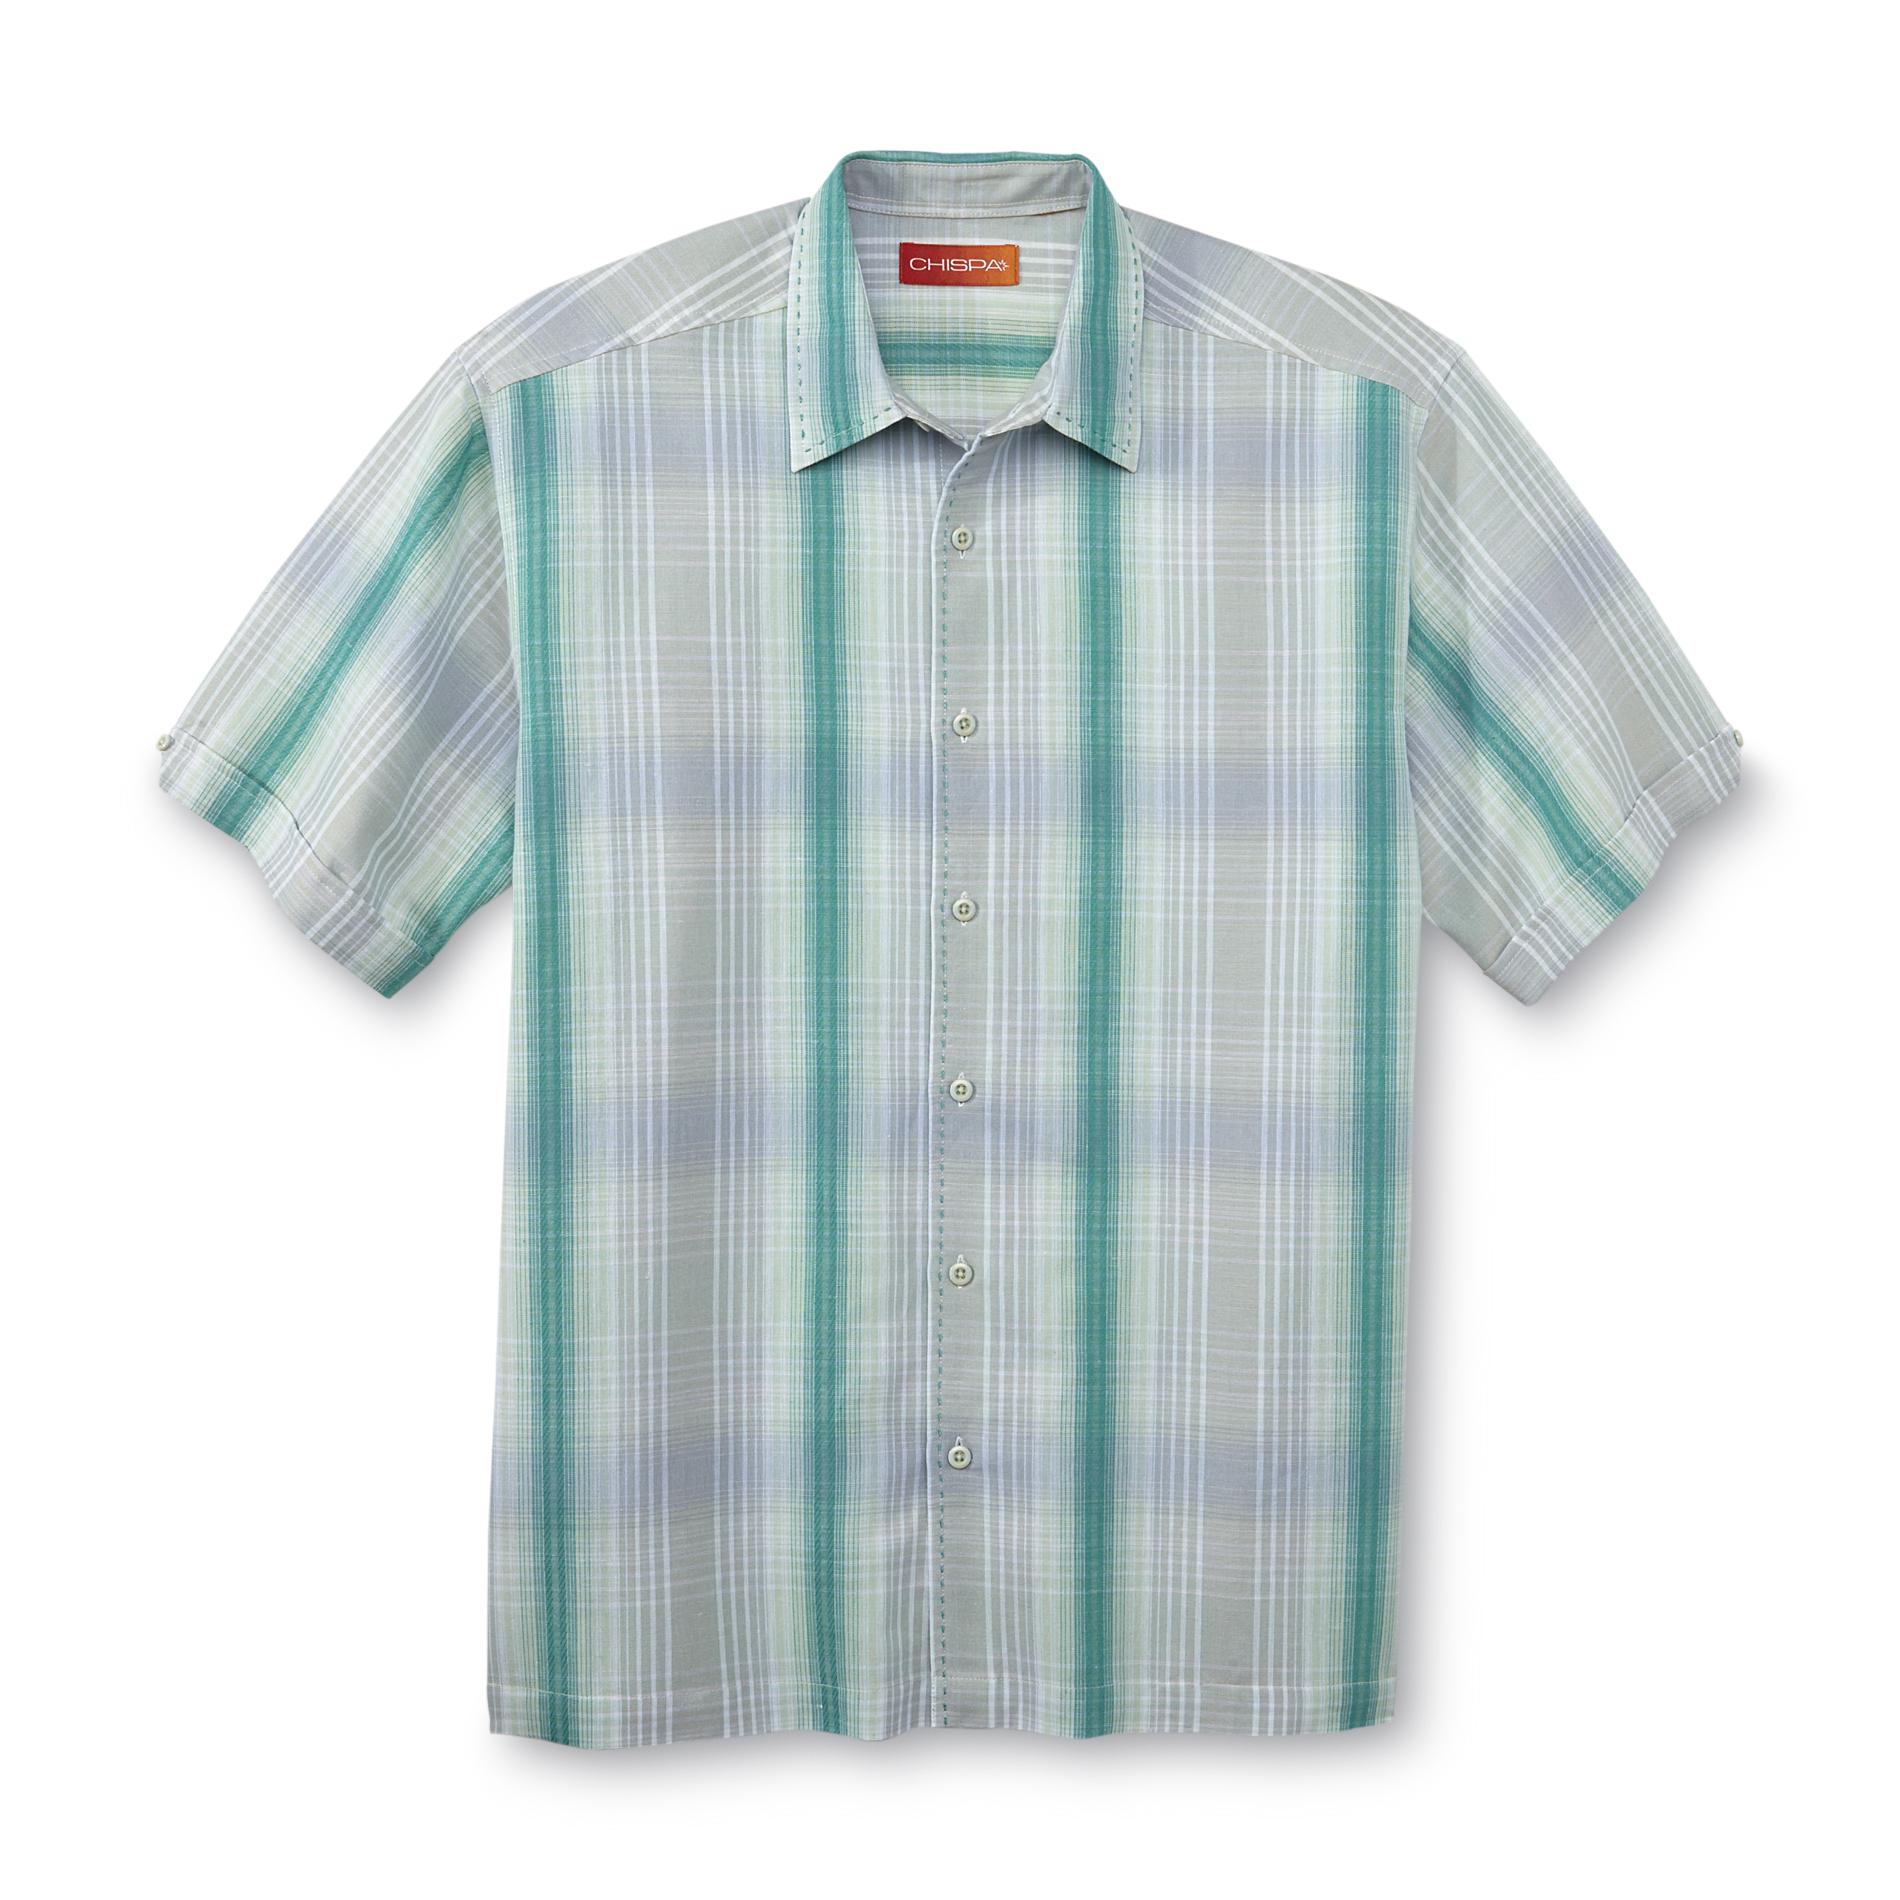 Chispa Men's Short-Sleeve Shirt - Plaid